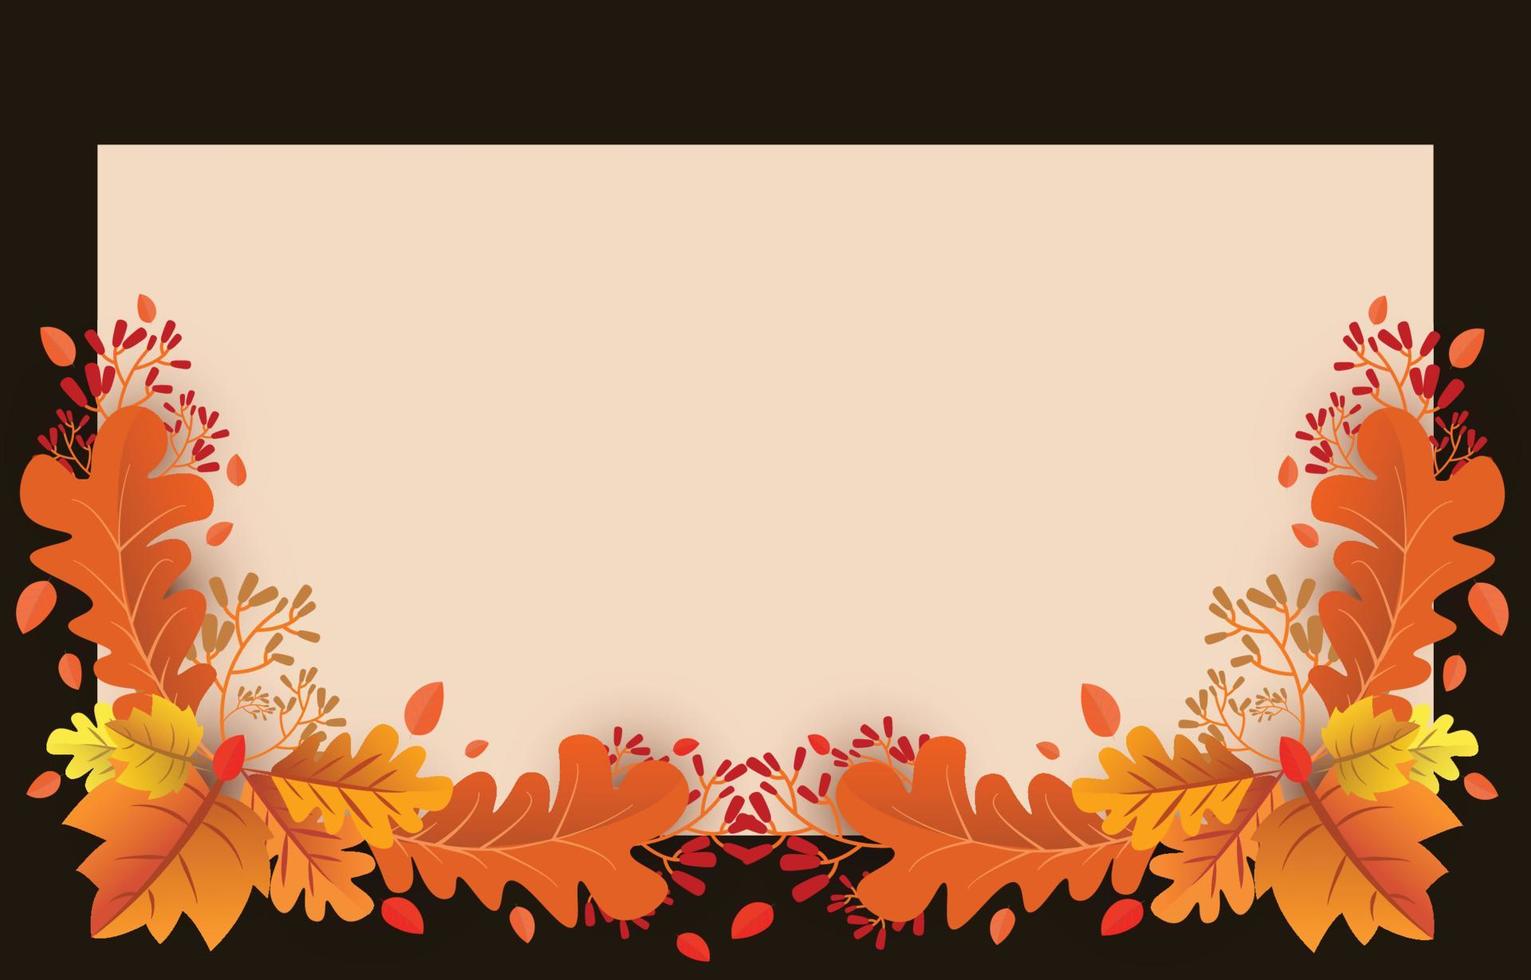 fondo de otoño con hojas de color amarillo dorado con marcos cuadrados y espacio libre, concepto de otoño, para papel tapiz, postales, tarjetas de felicitación, páginas web, banners, ventas en línea. ilustración vectorial vector